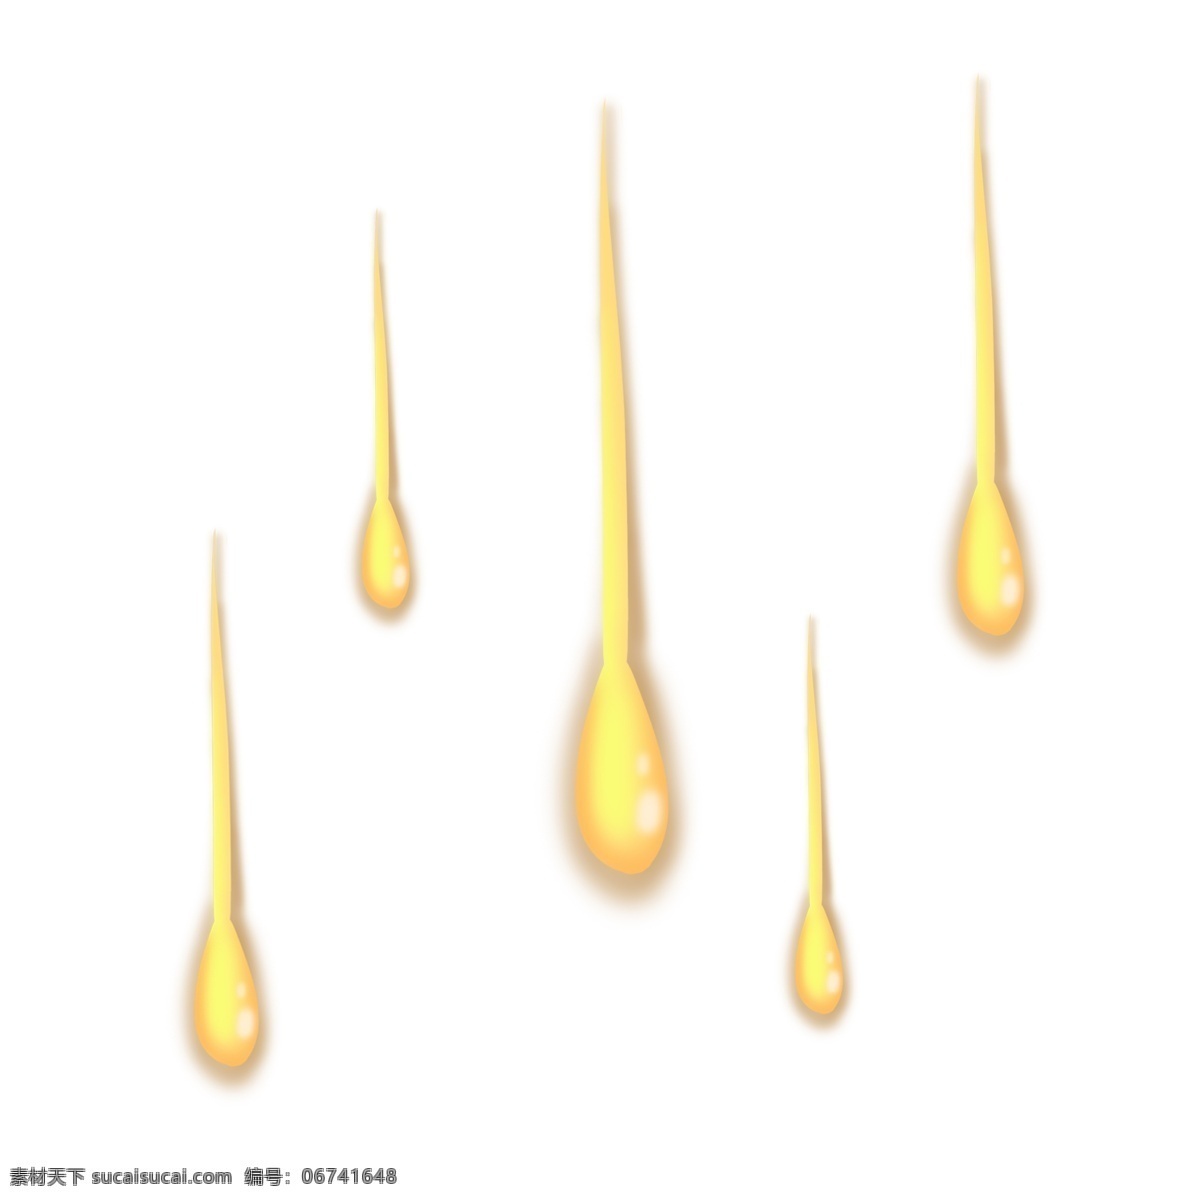 金色 下滑 立体 油 滴 黄色 往下滑 下落状 下移 油滴 水滴 气泡 水泡 立体感 卡通 淡黄色 下沉